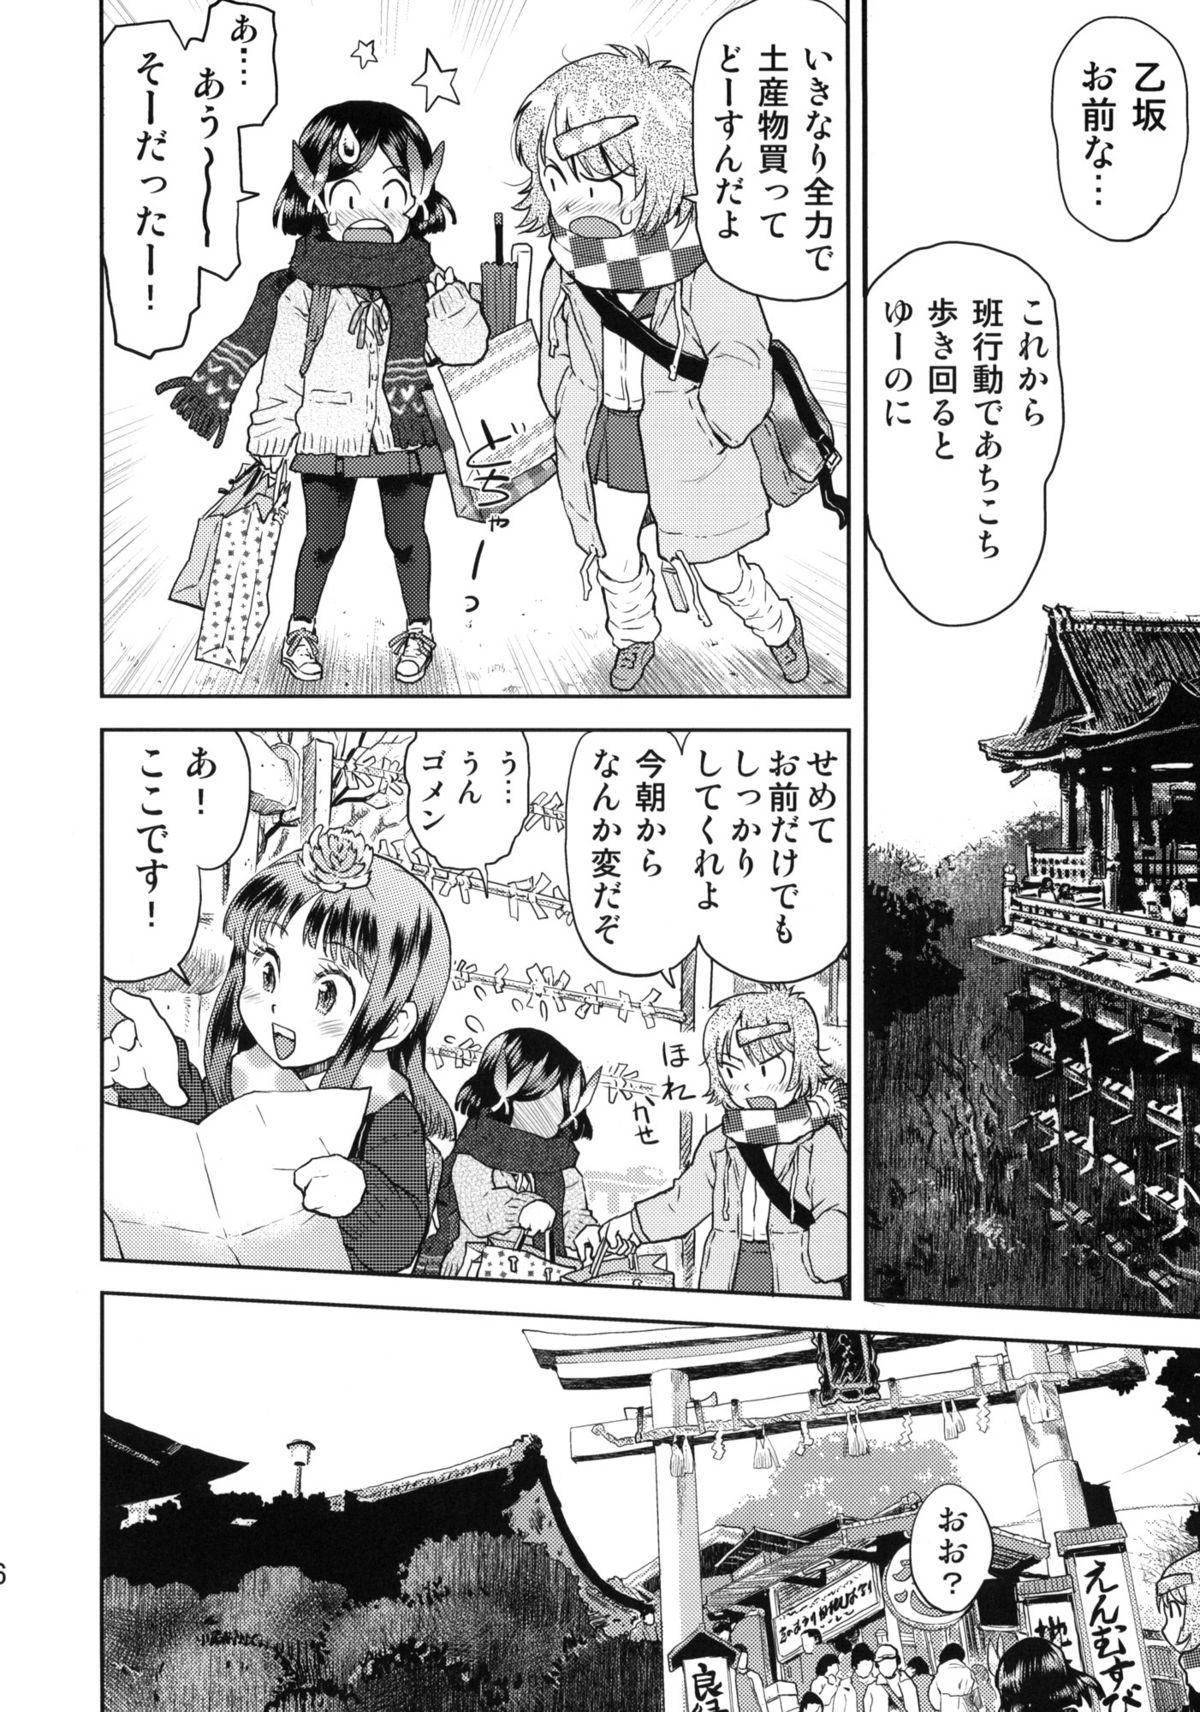 Eating Shuugaku Ryokou no Shiori Futsukame Girl Girl - Page 5